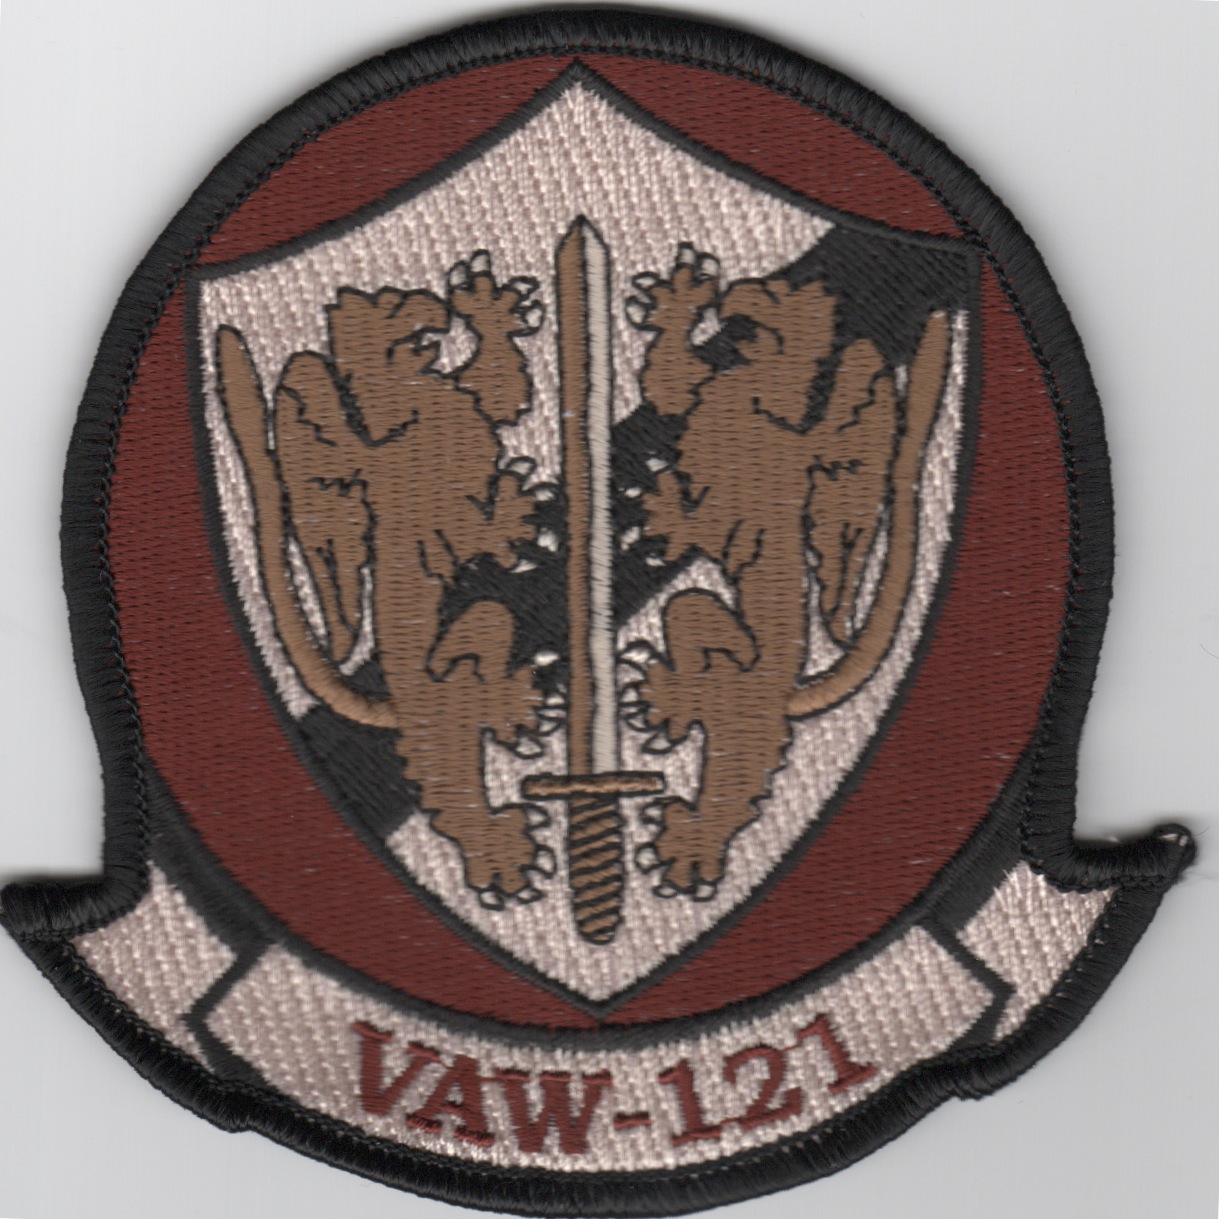 VAW-121 Squadron Patch (Des)